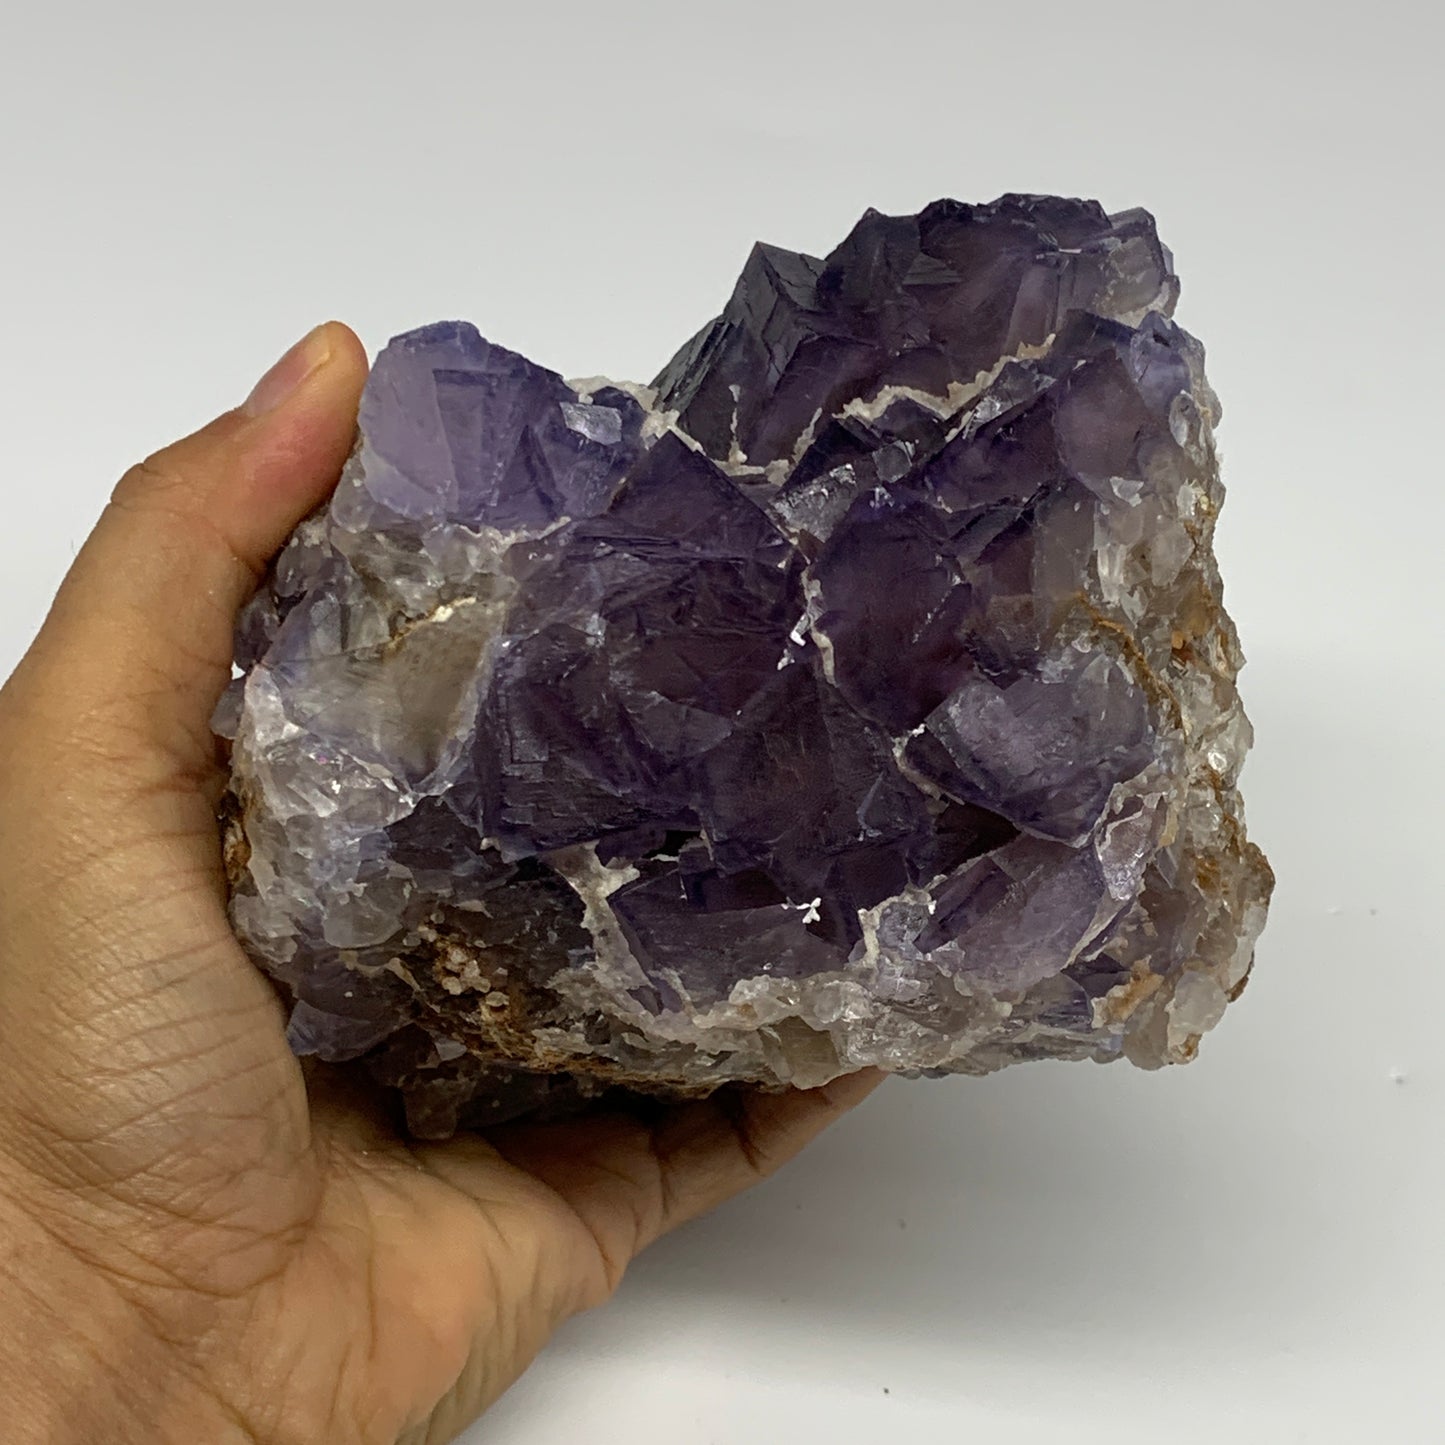 4.12 lbs, 4.9"x4.7"x3.8", Purple Fluorite Crystal Mineral Specimen @Pakistan, B2